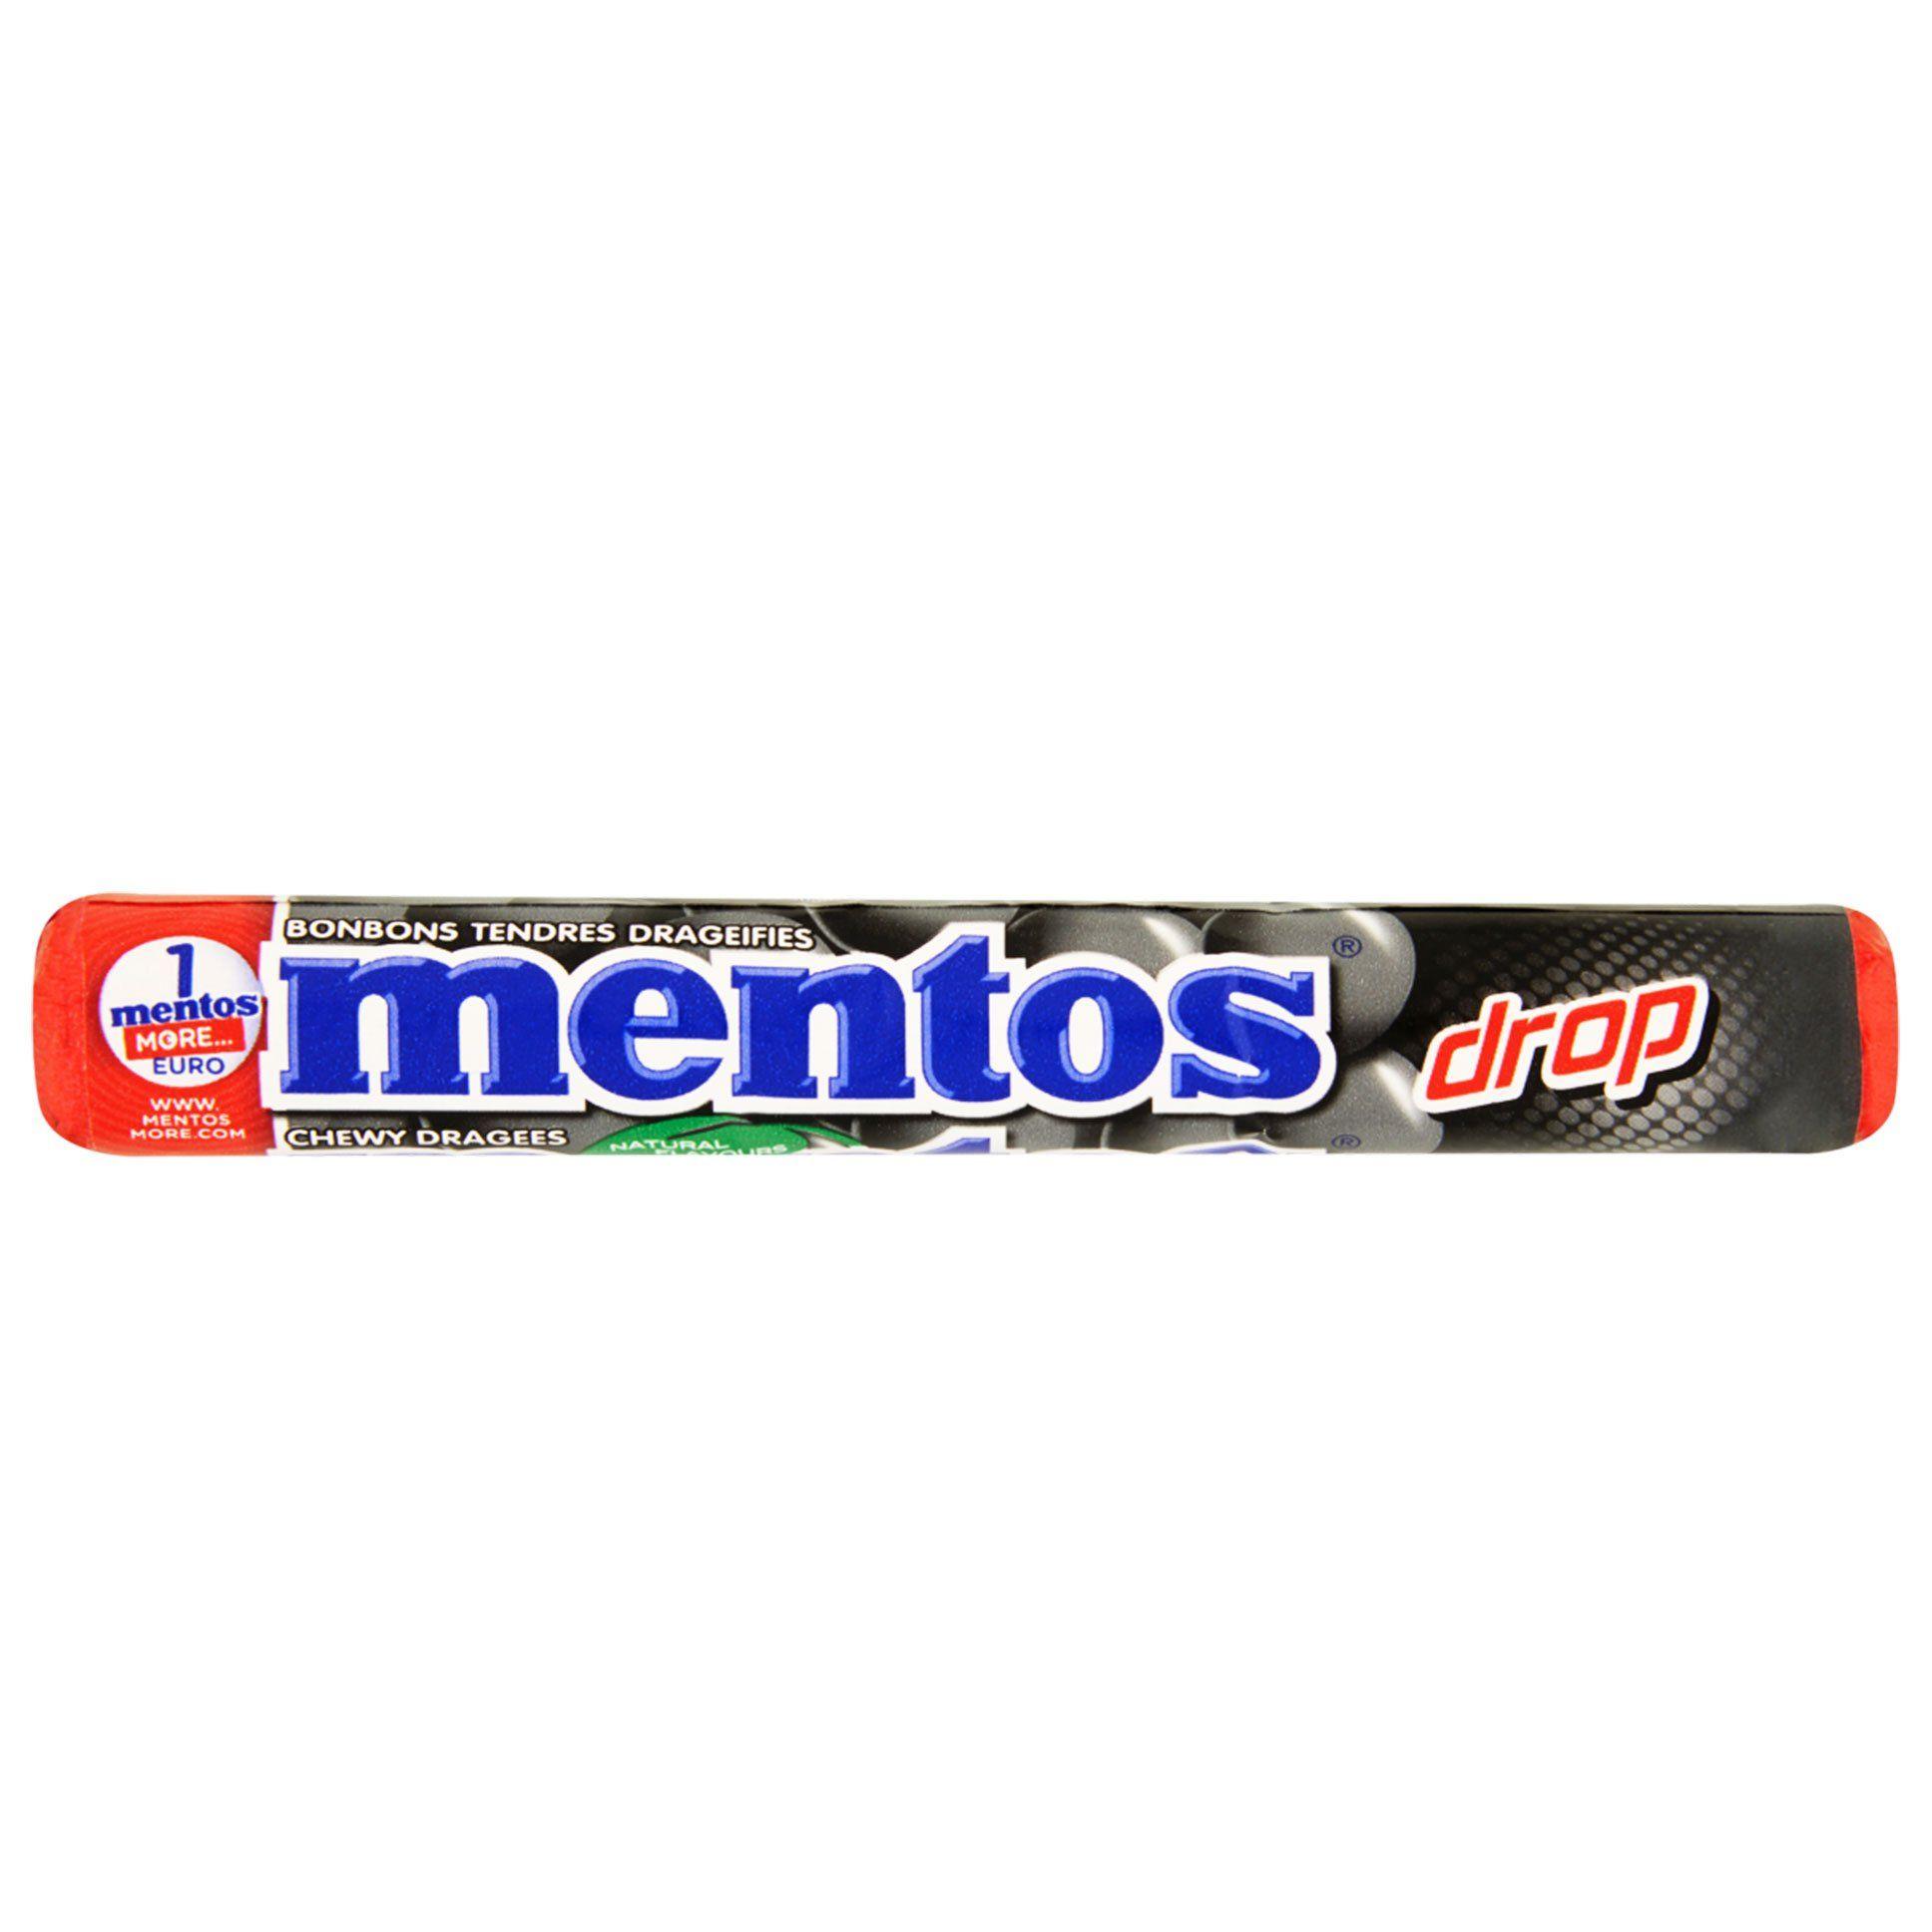 Mentos Logo - Mentos - Drop(Licorice Flavor), 1.32 oz. – Snyder's Candy